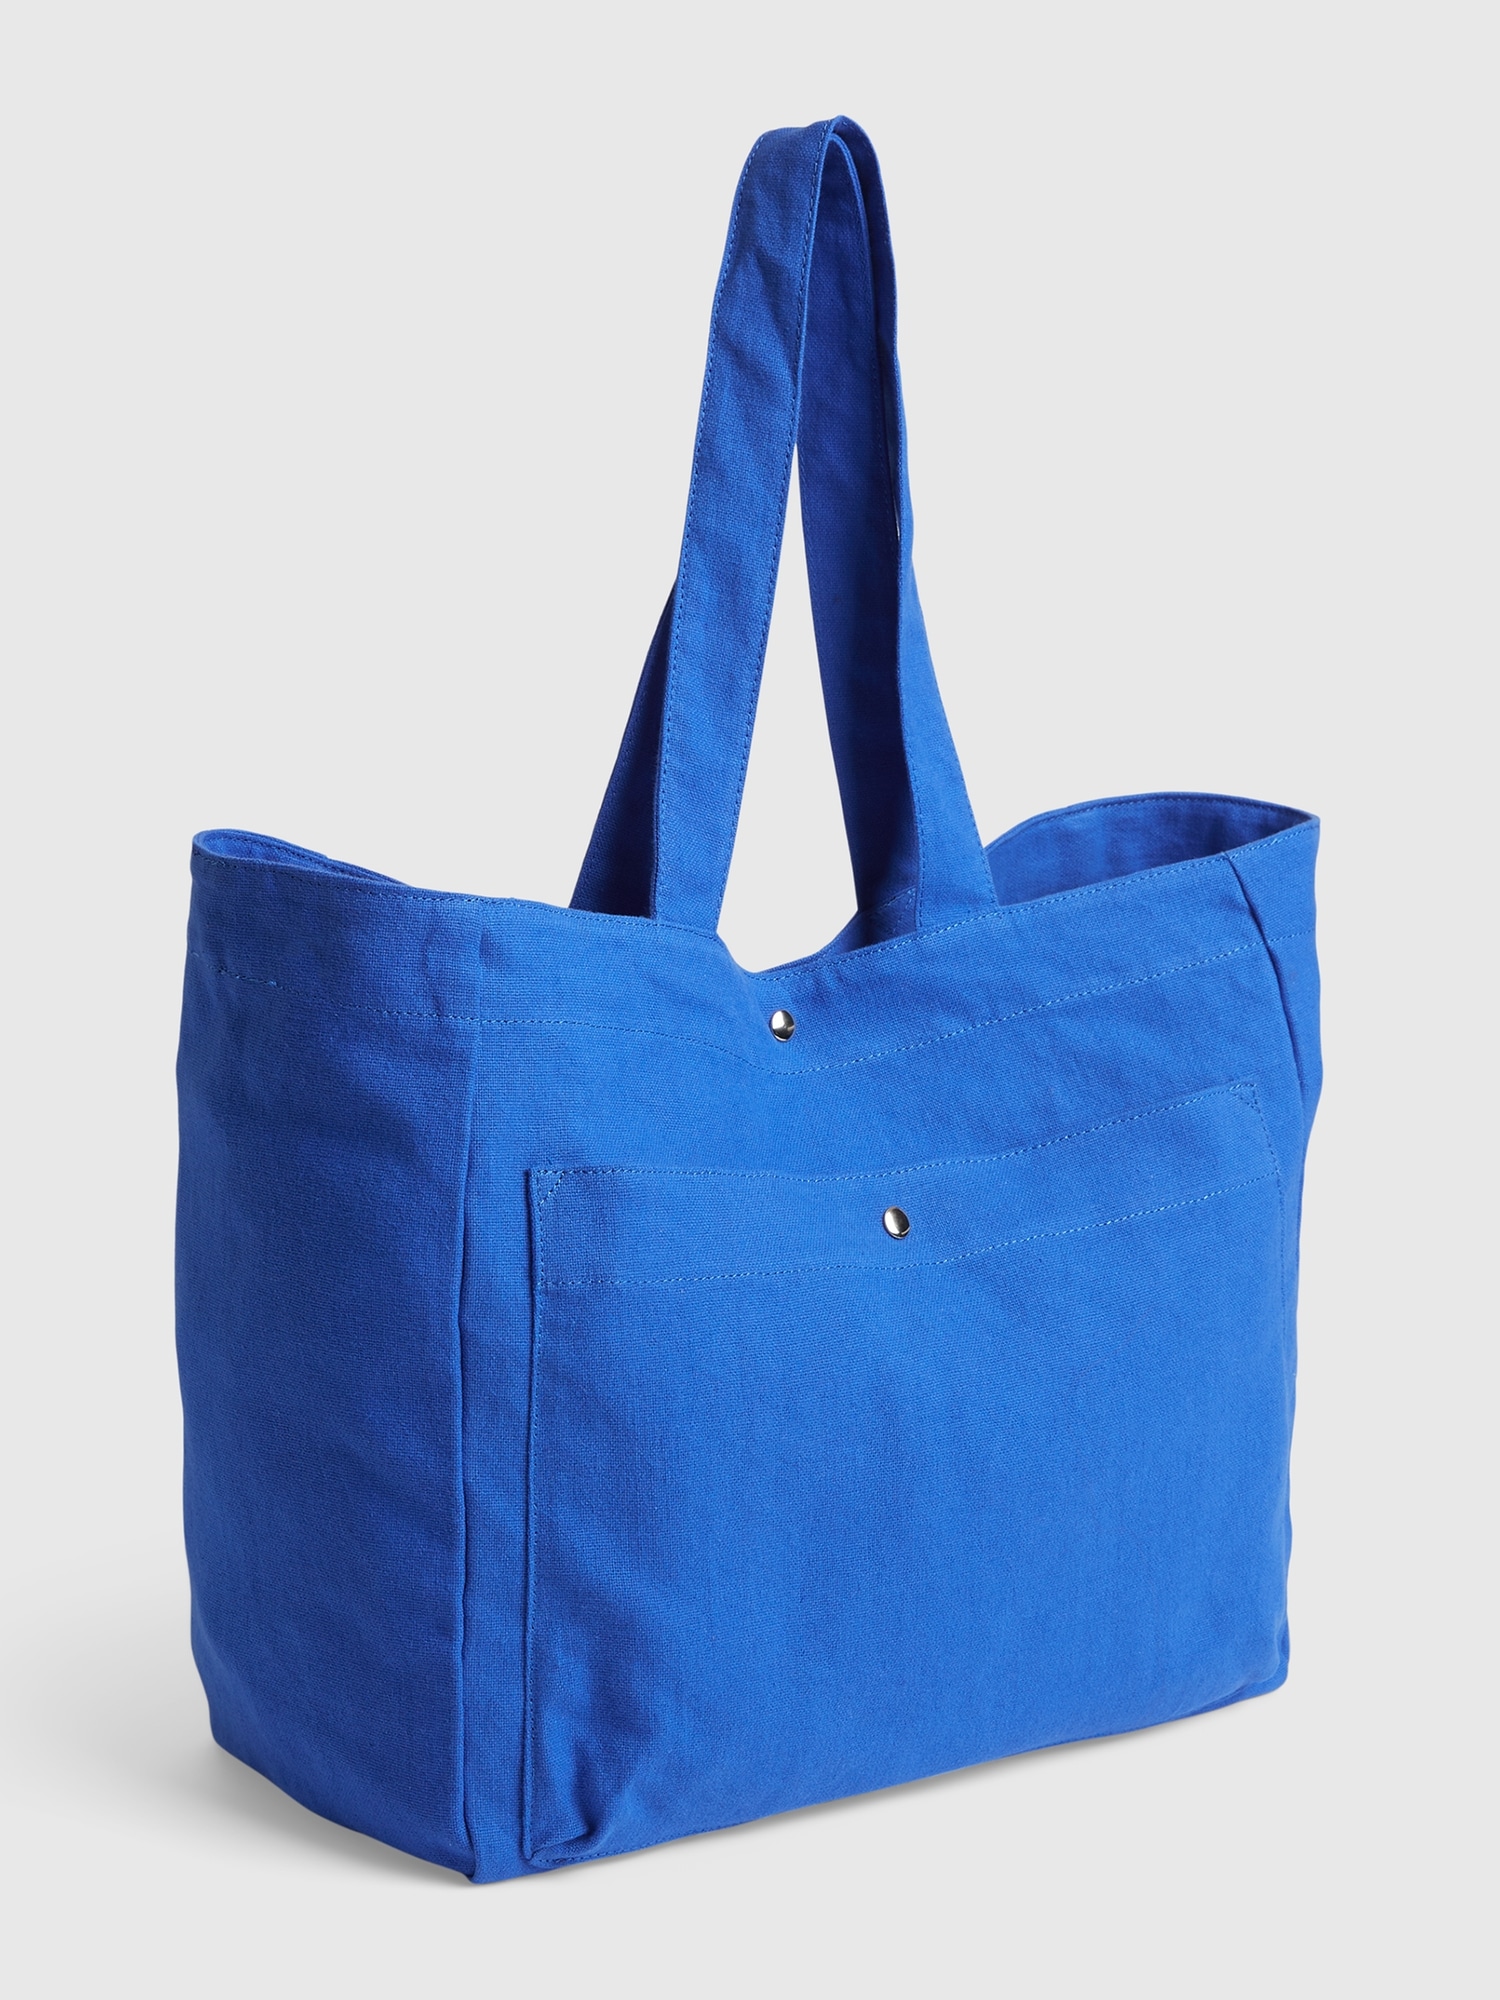 Gap Tote Bag blue. 1